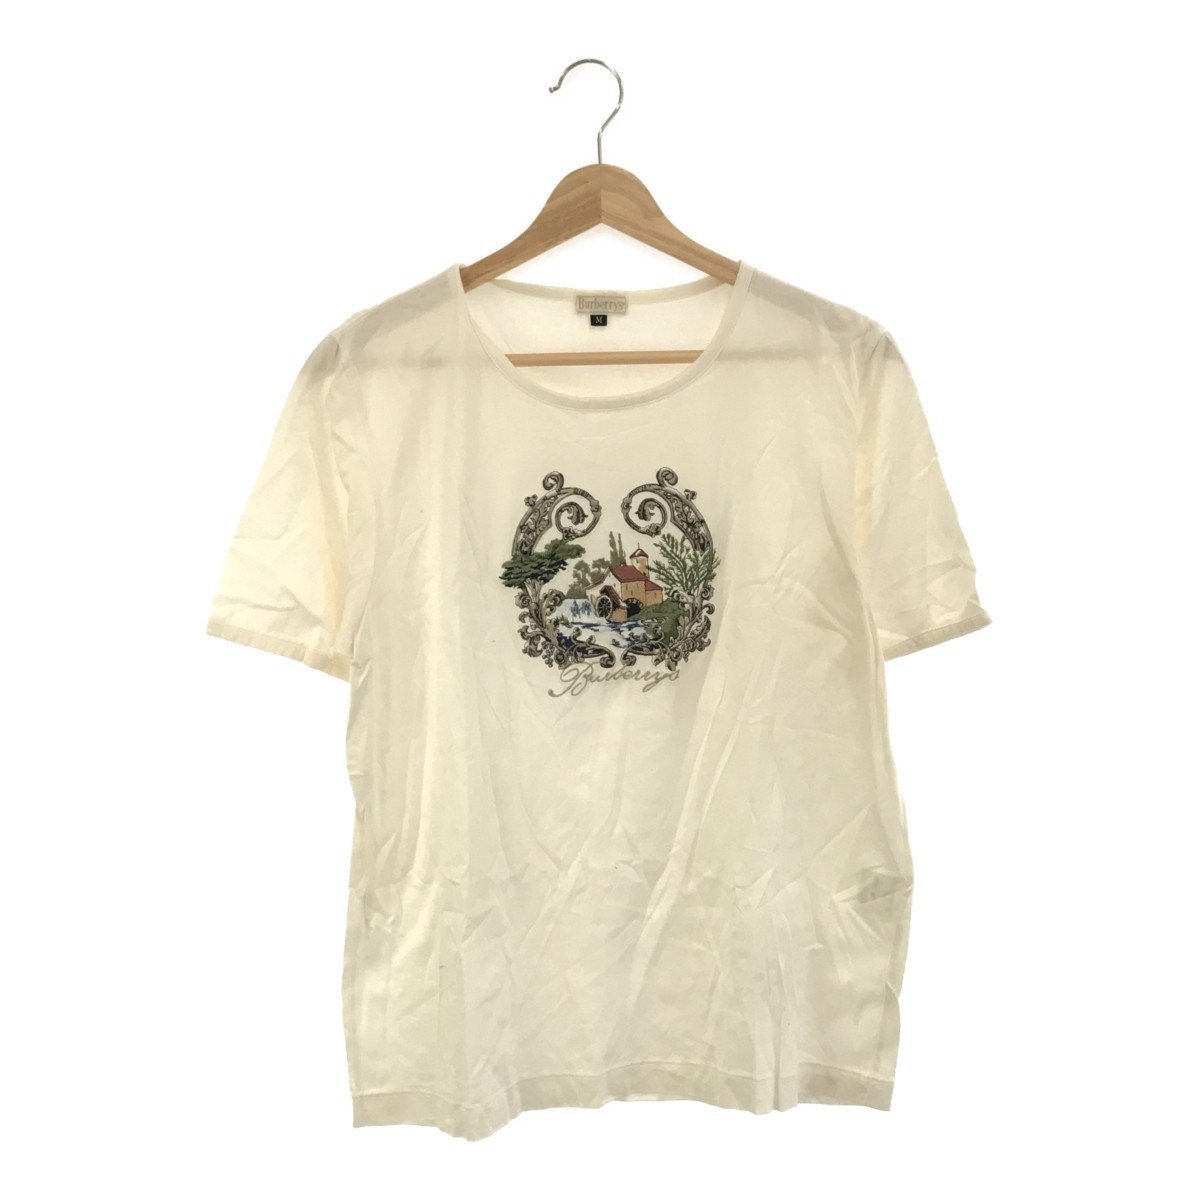 ◆中古品◆Burberrys バーバリー Tシャツ プルオーバー カットソー 刺繍 レディス Mサイズ アイボリー系 R75977NSＣの画像1